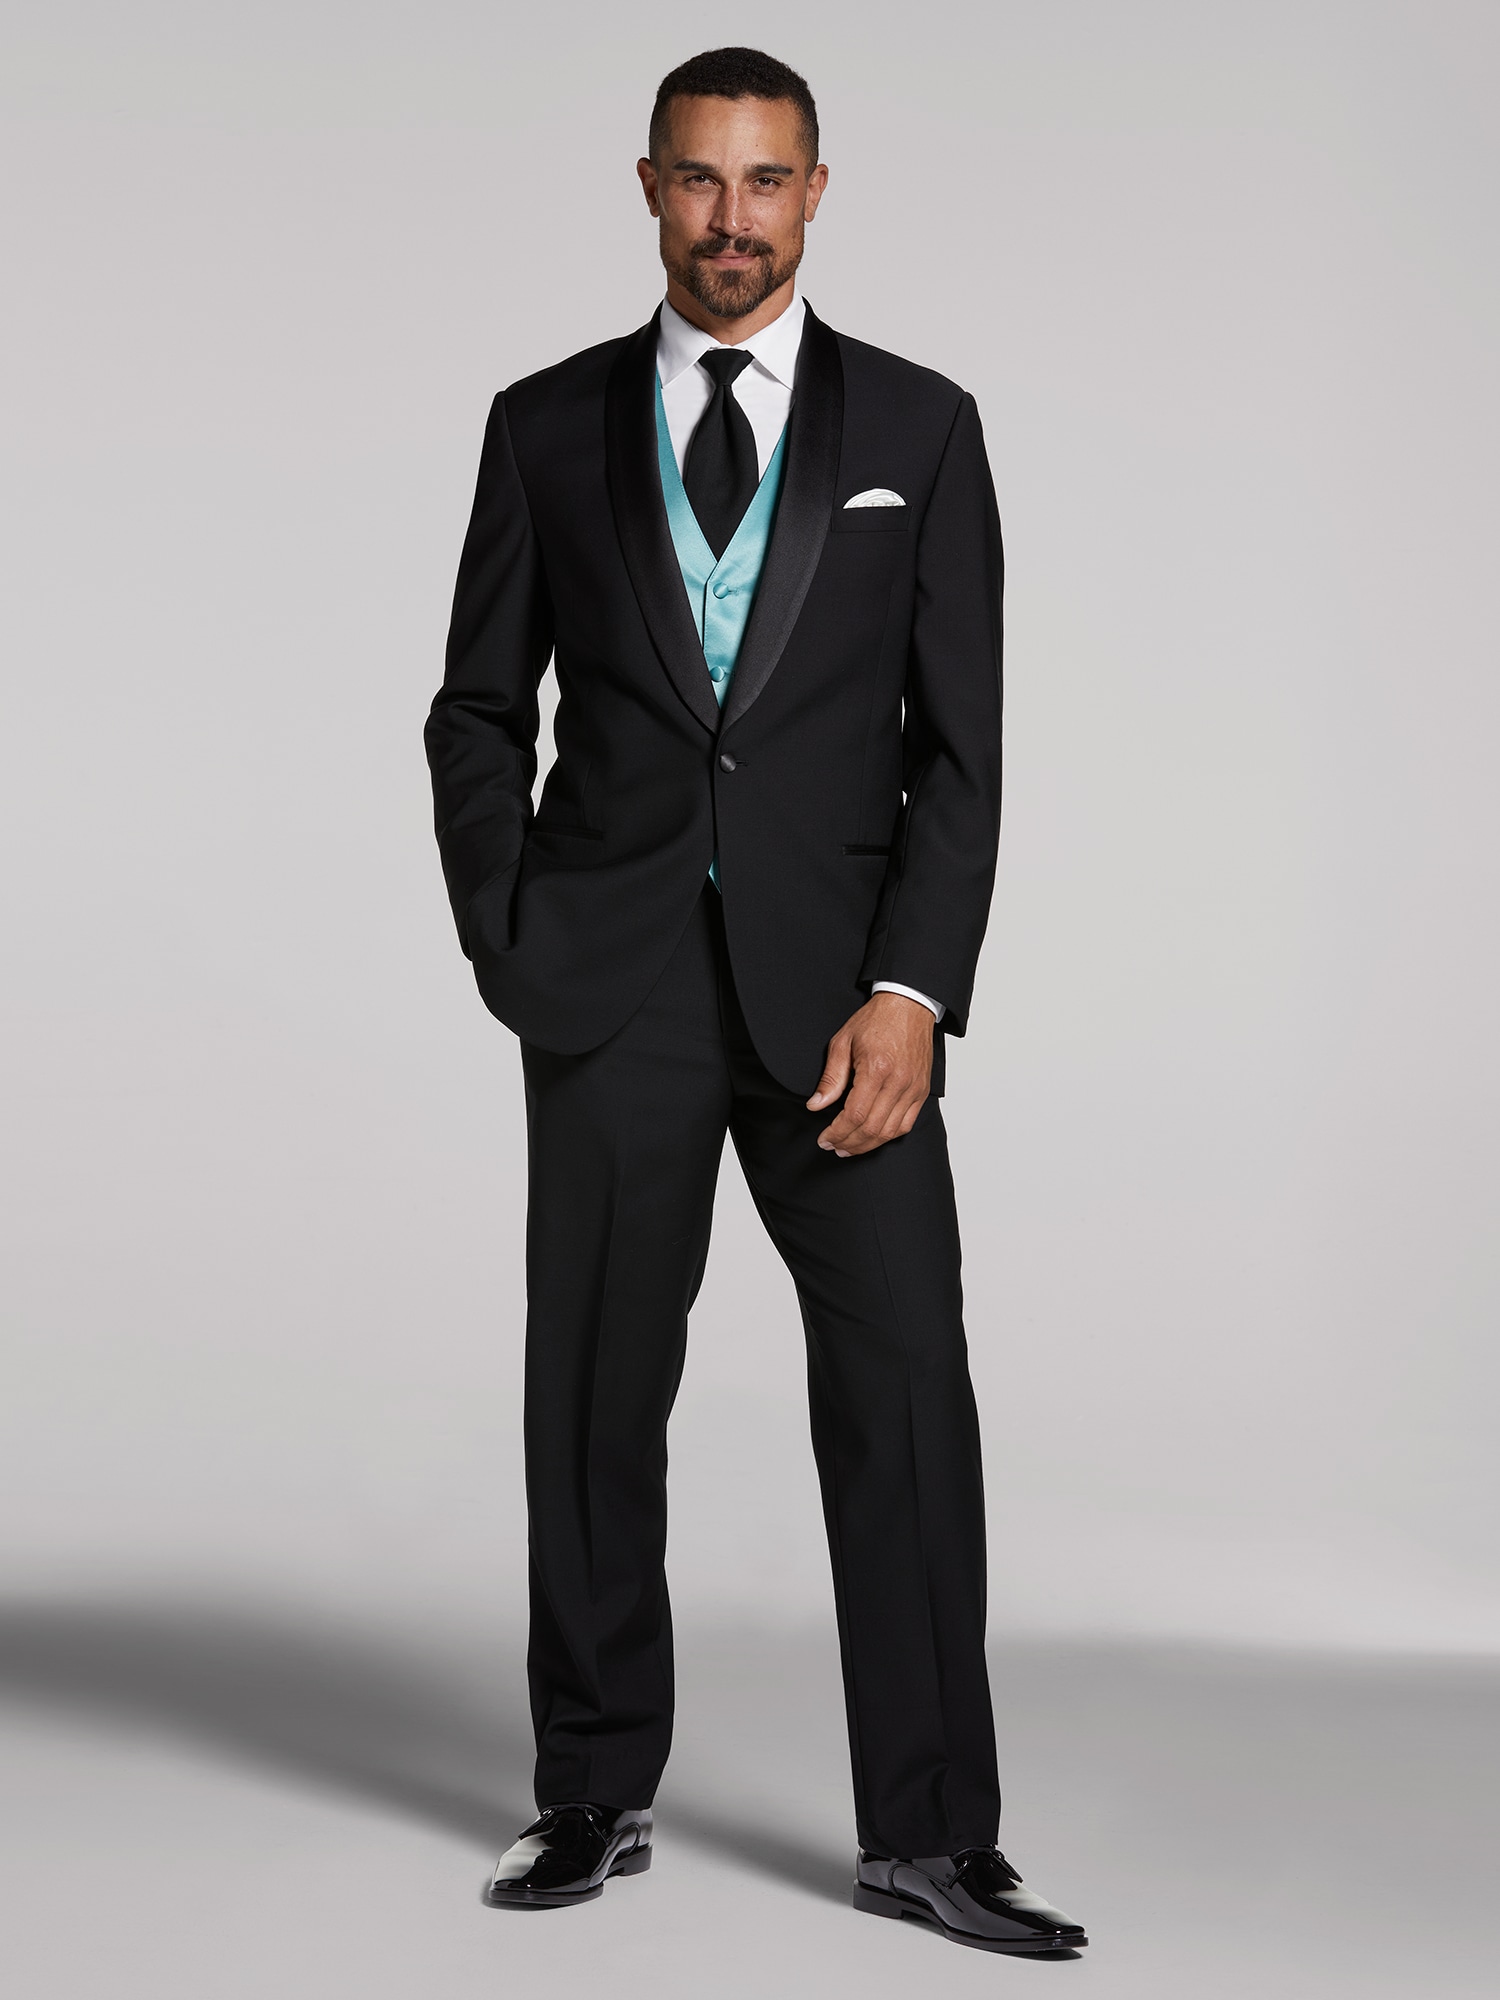 Men Black Suits Wedding Suit 3 Piece Suits Prom Suits, One Button  Cummerbund Tuxedo, Black Slim Fit Shawl Lapel Cummerbund Tuxedo 